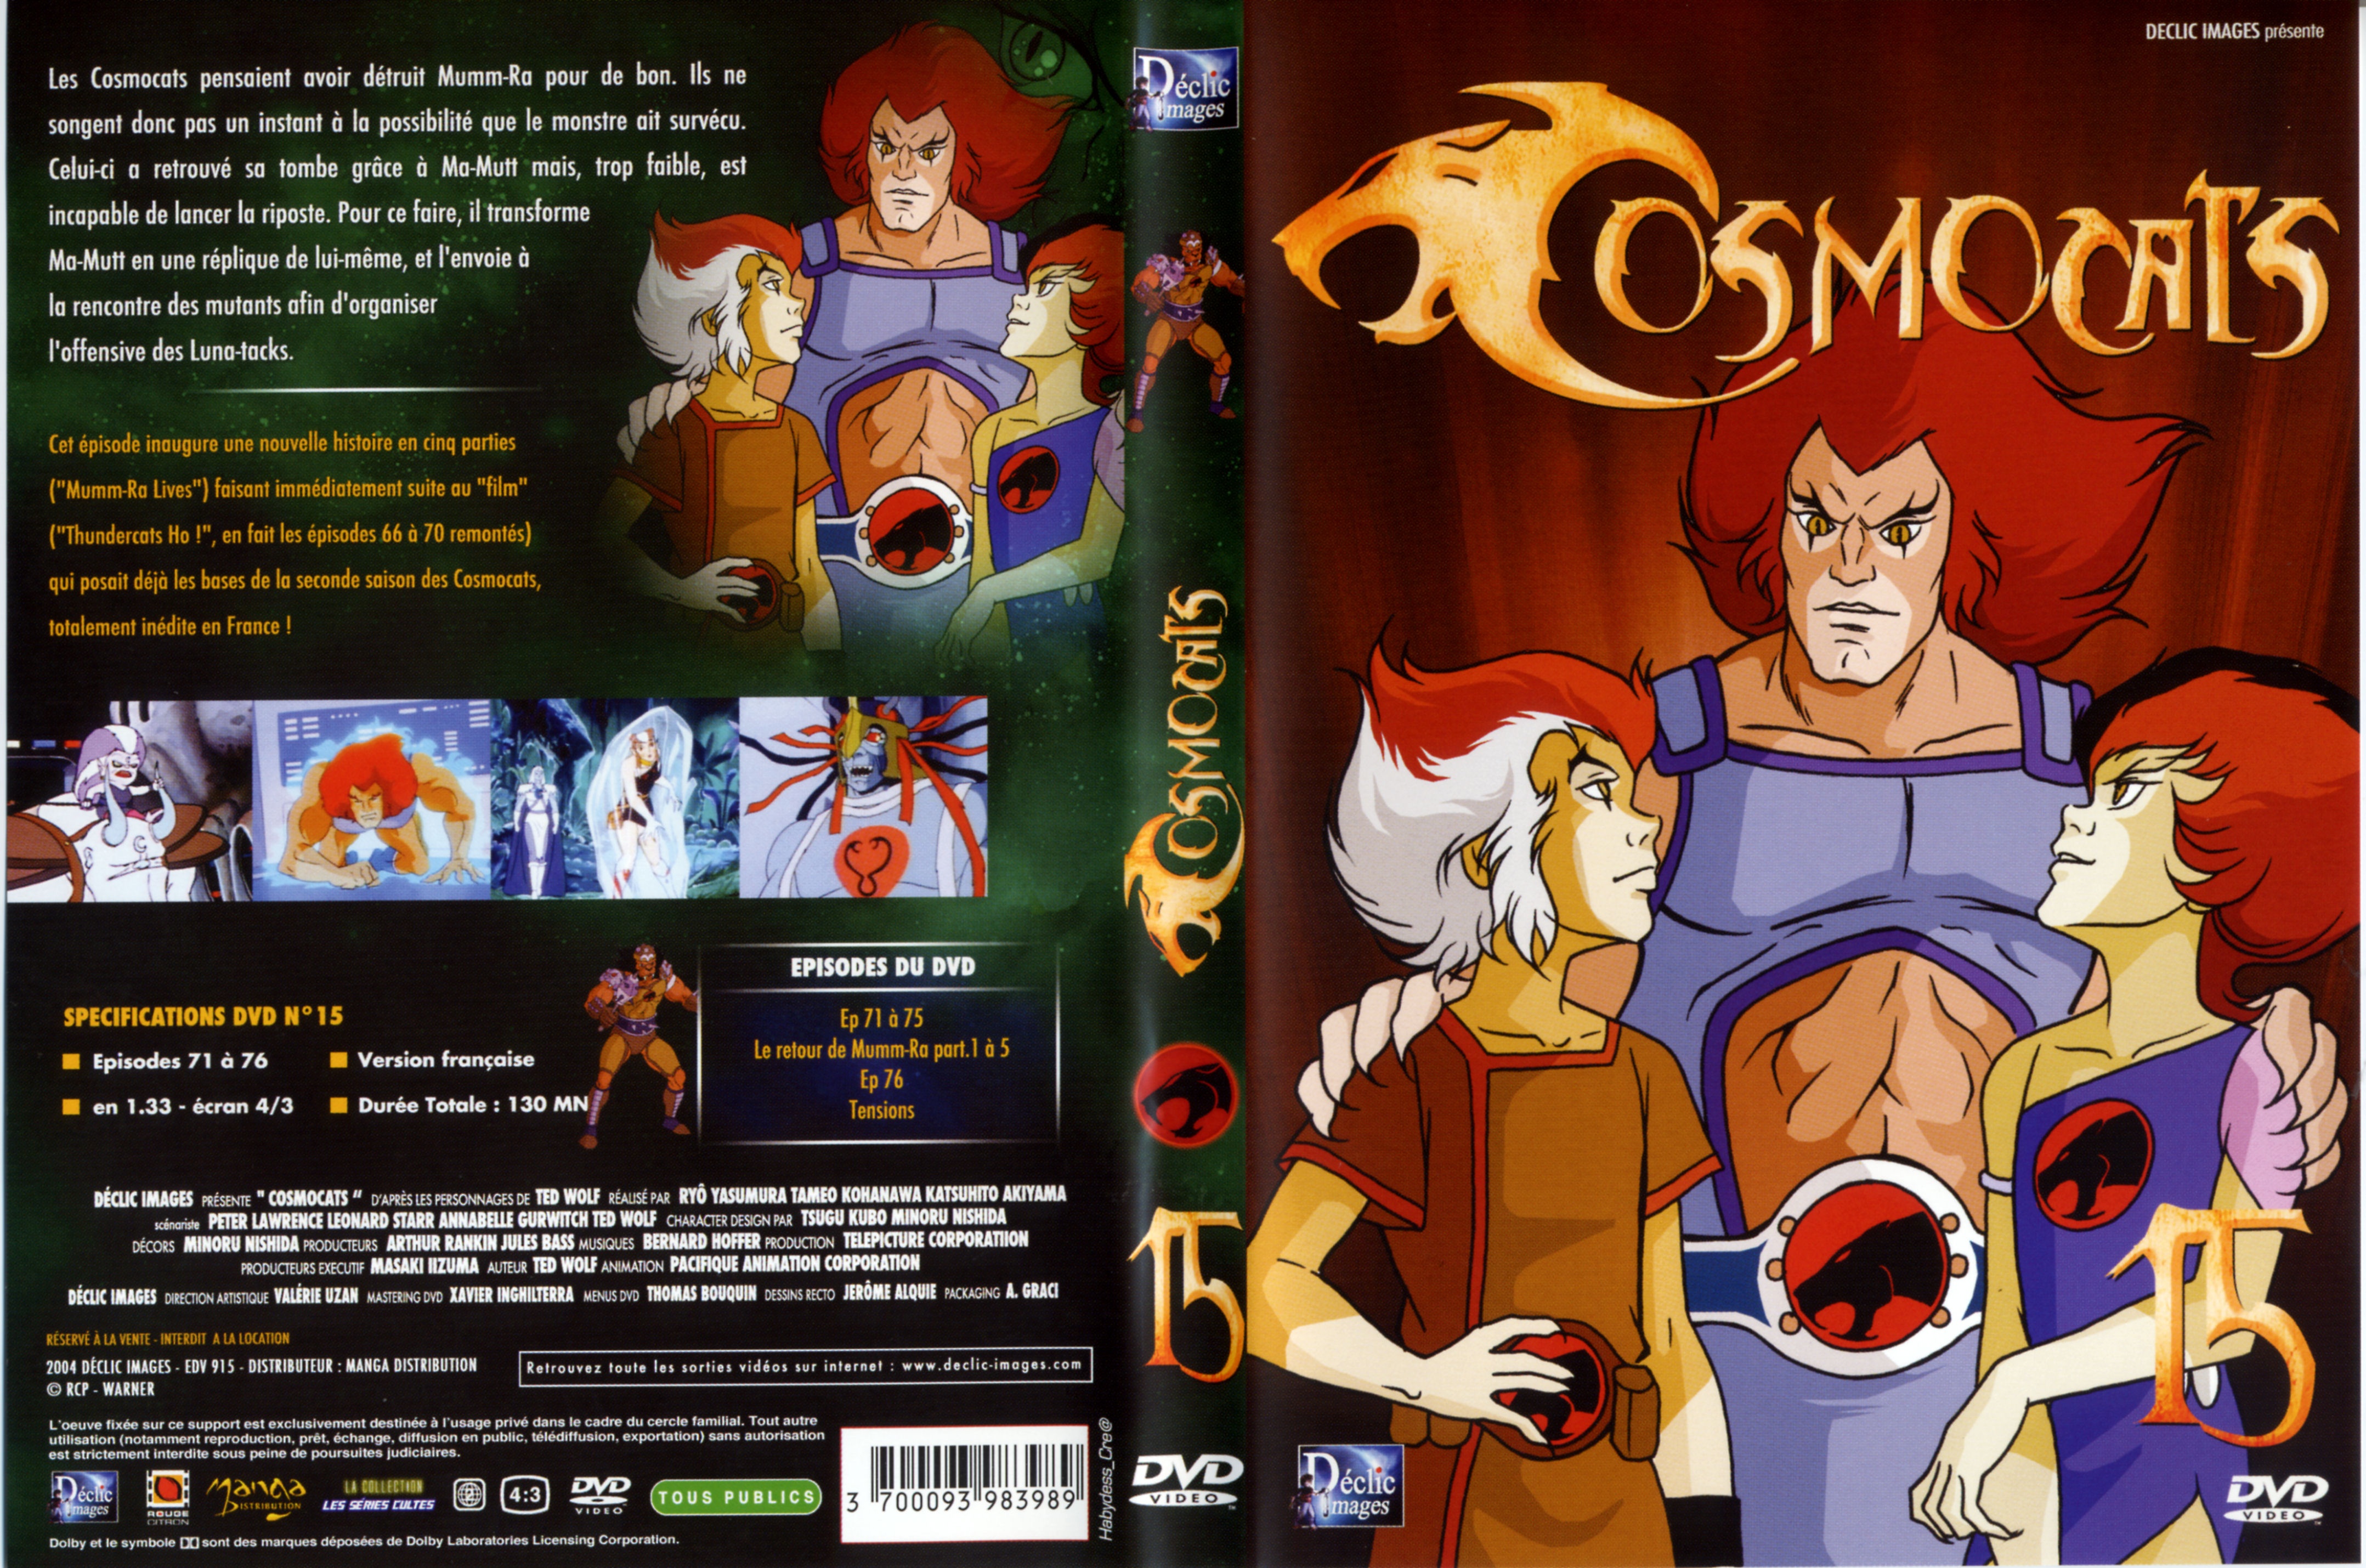 Jaquette DVD Cosmocats vol 15